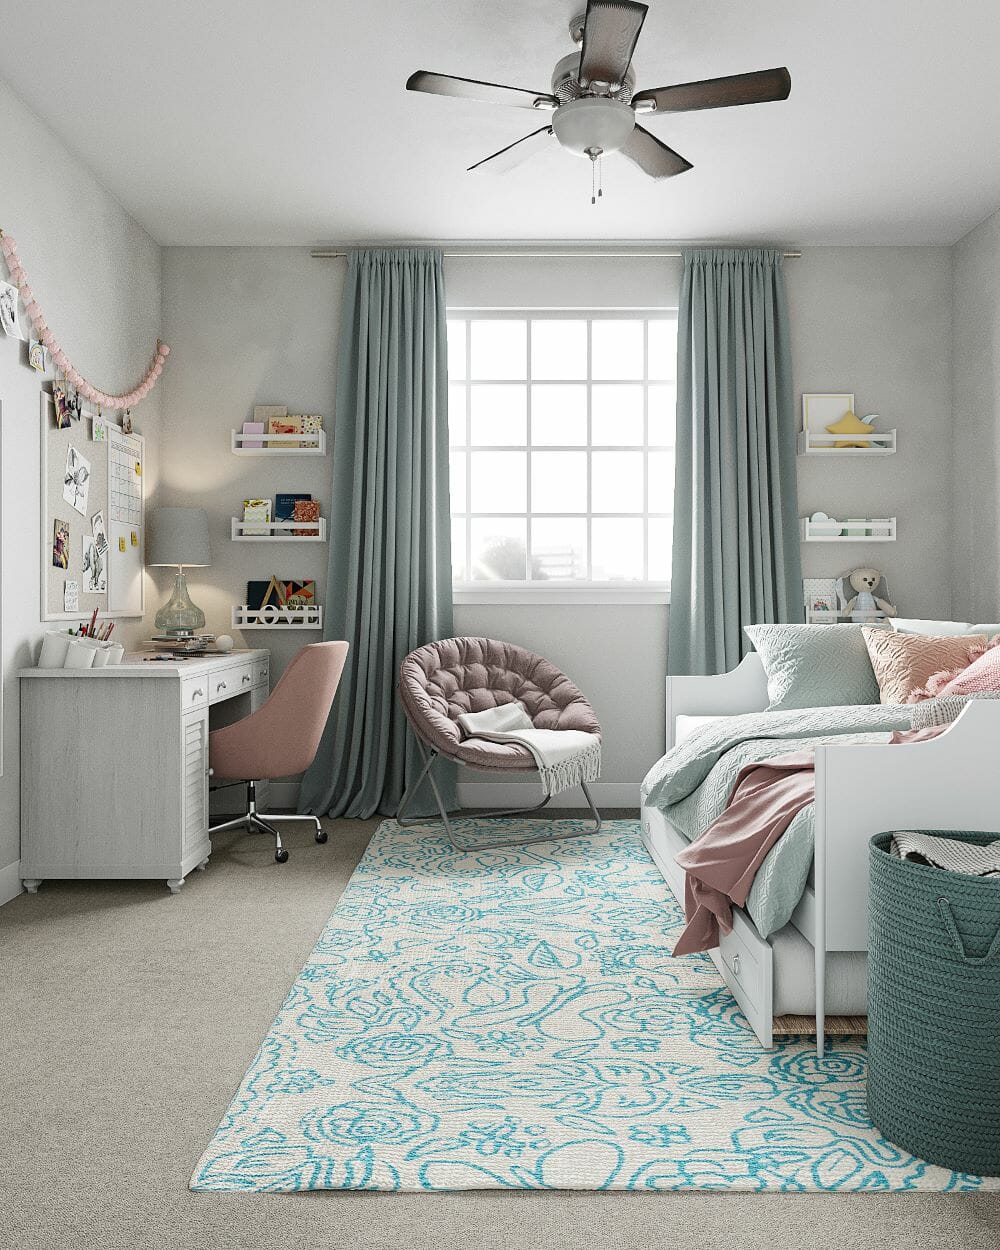 Pastel bedroom interior design by Decorilla